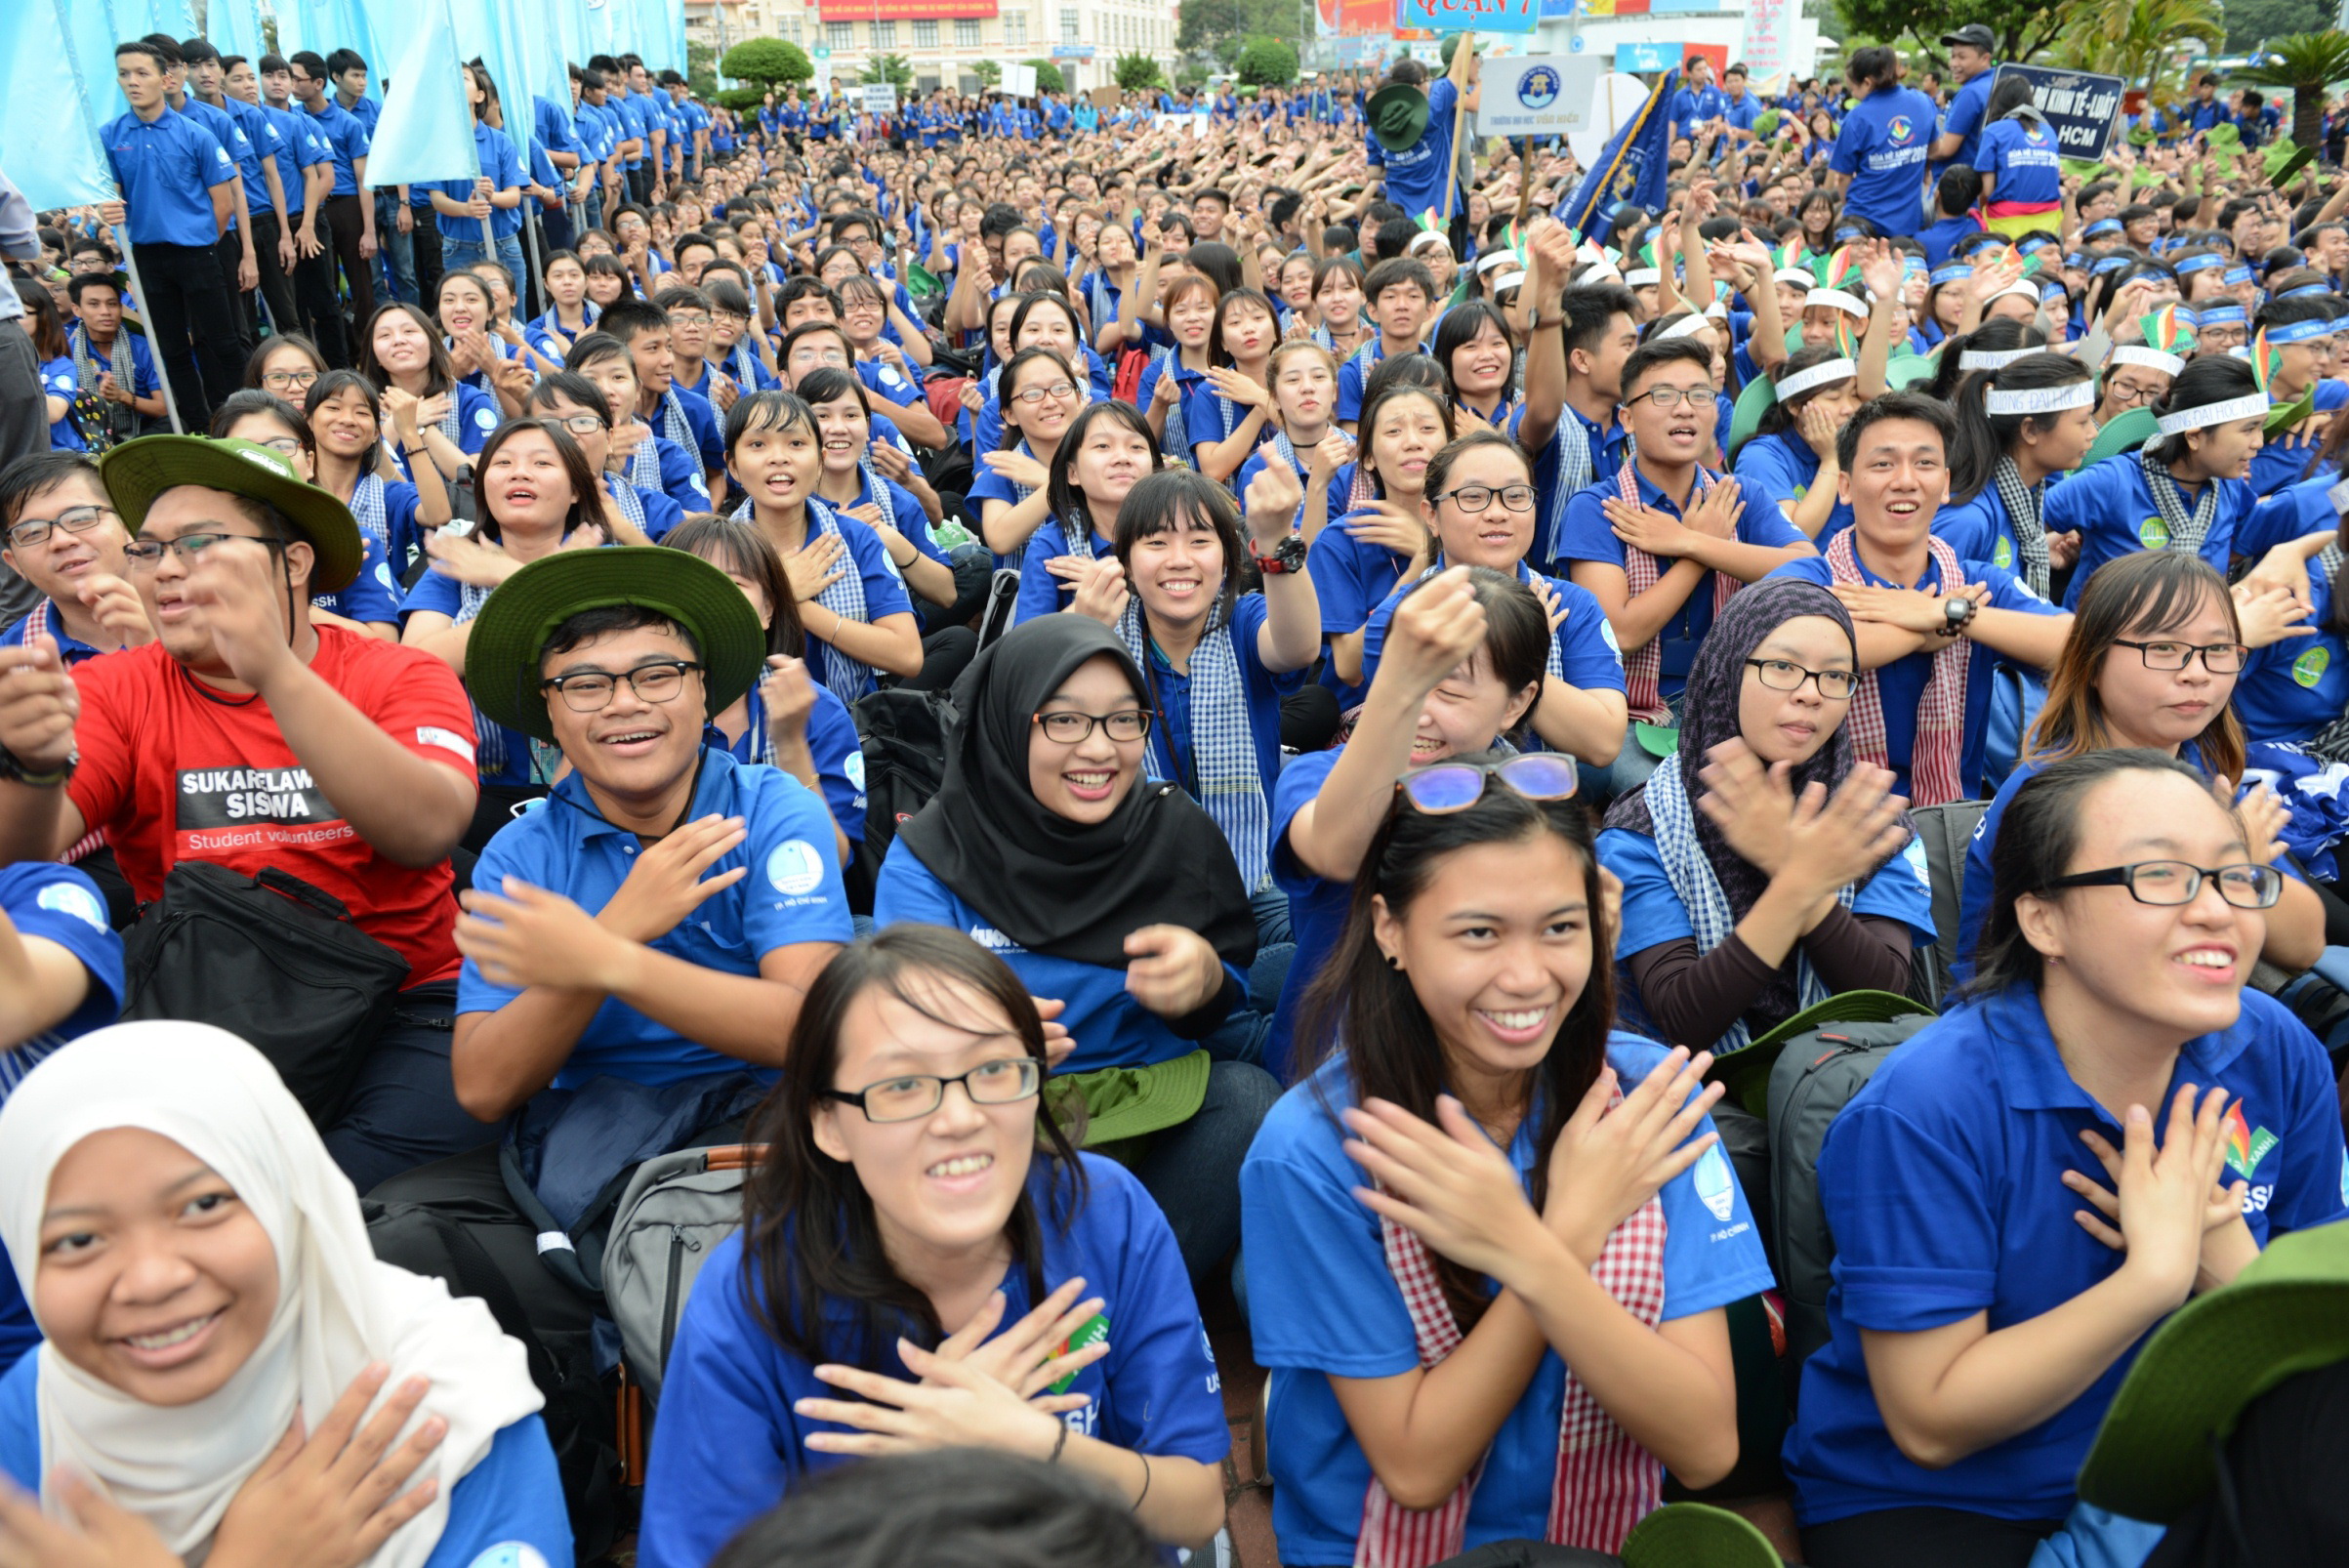 50 sinh viên Malaysia cùng sang tham gia Mùa hè xanh 2016 với chiến sĩ tình nguyện tại TP.HCM - Ảnh: Duyên Phan